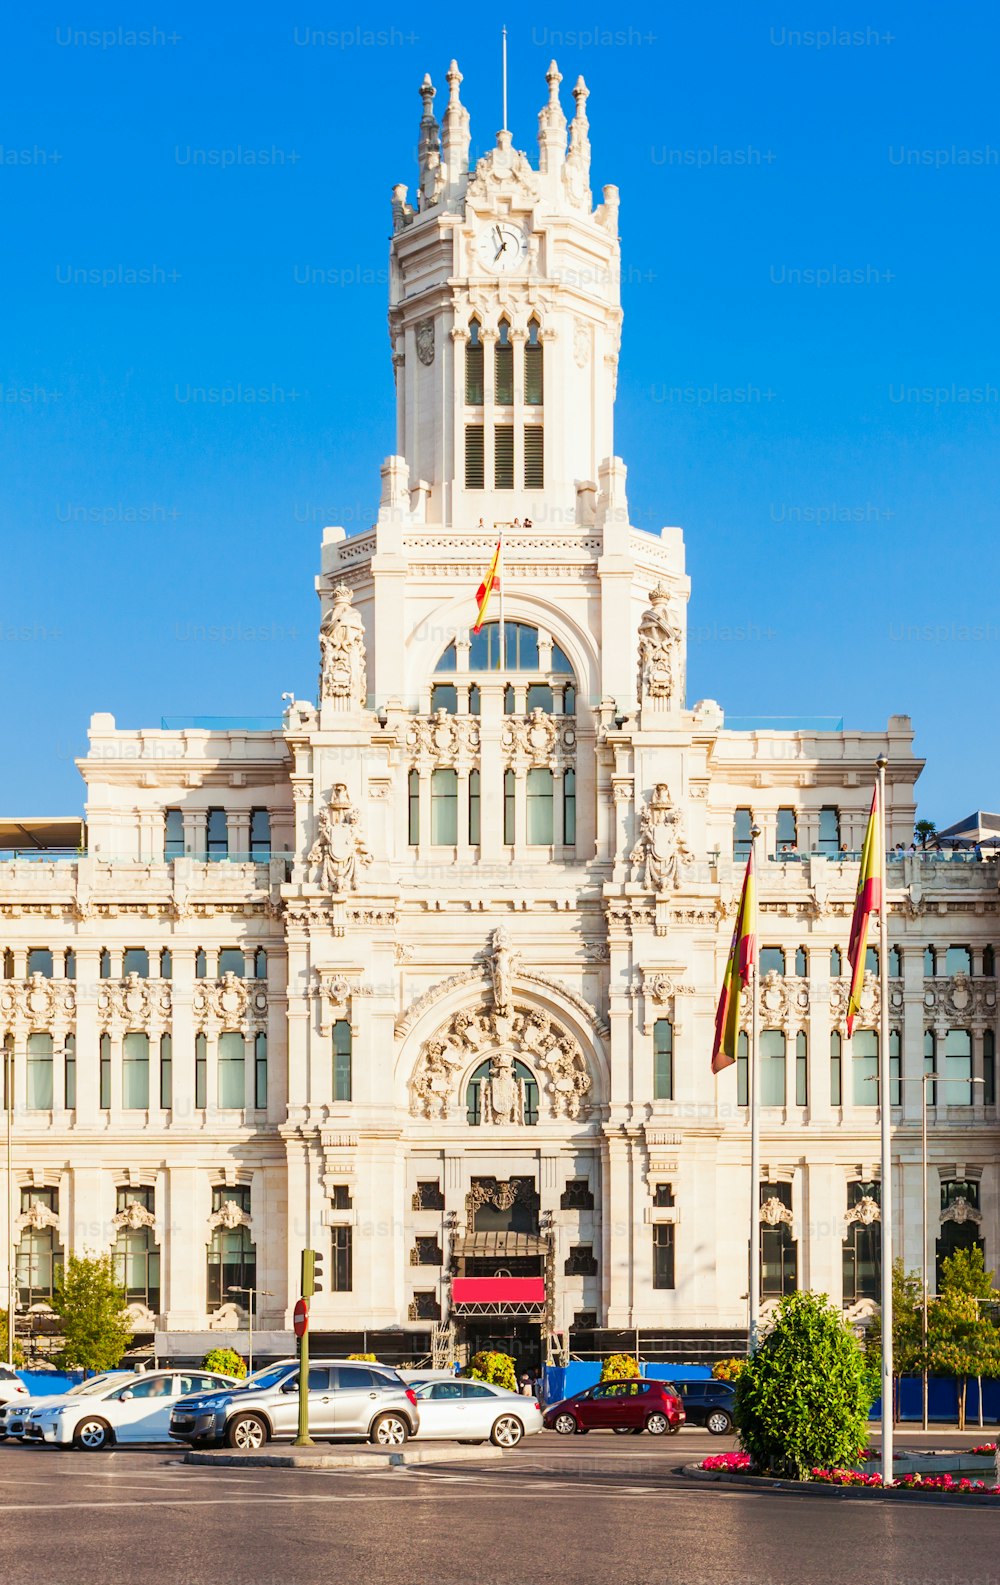 キュベレー宮殿またはパラシオデシベレスは、スペインのマドリード市内中心部のシベレス広場にある宮殿です。